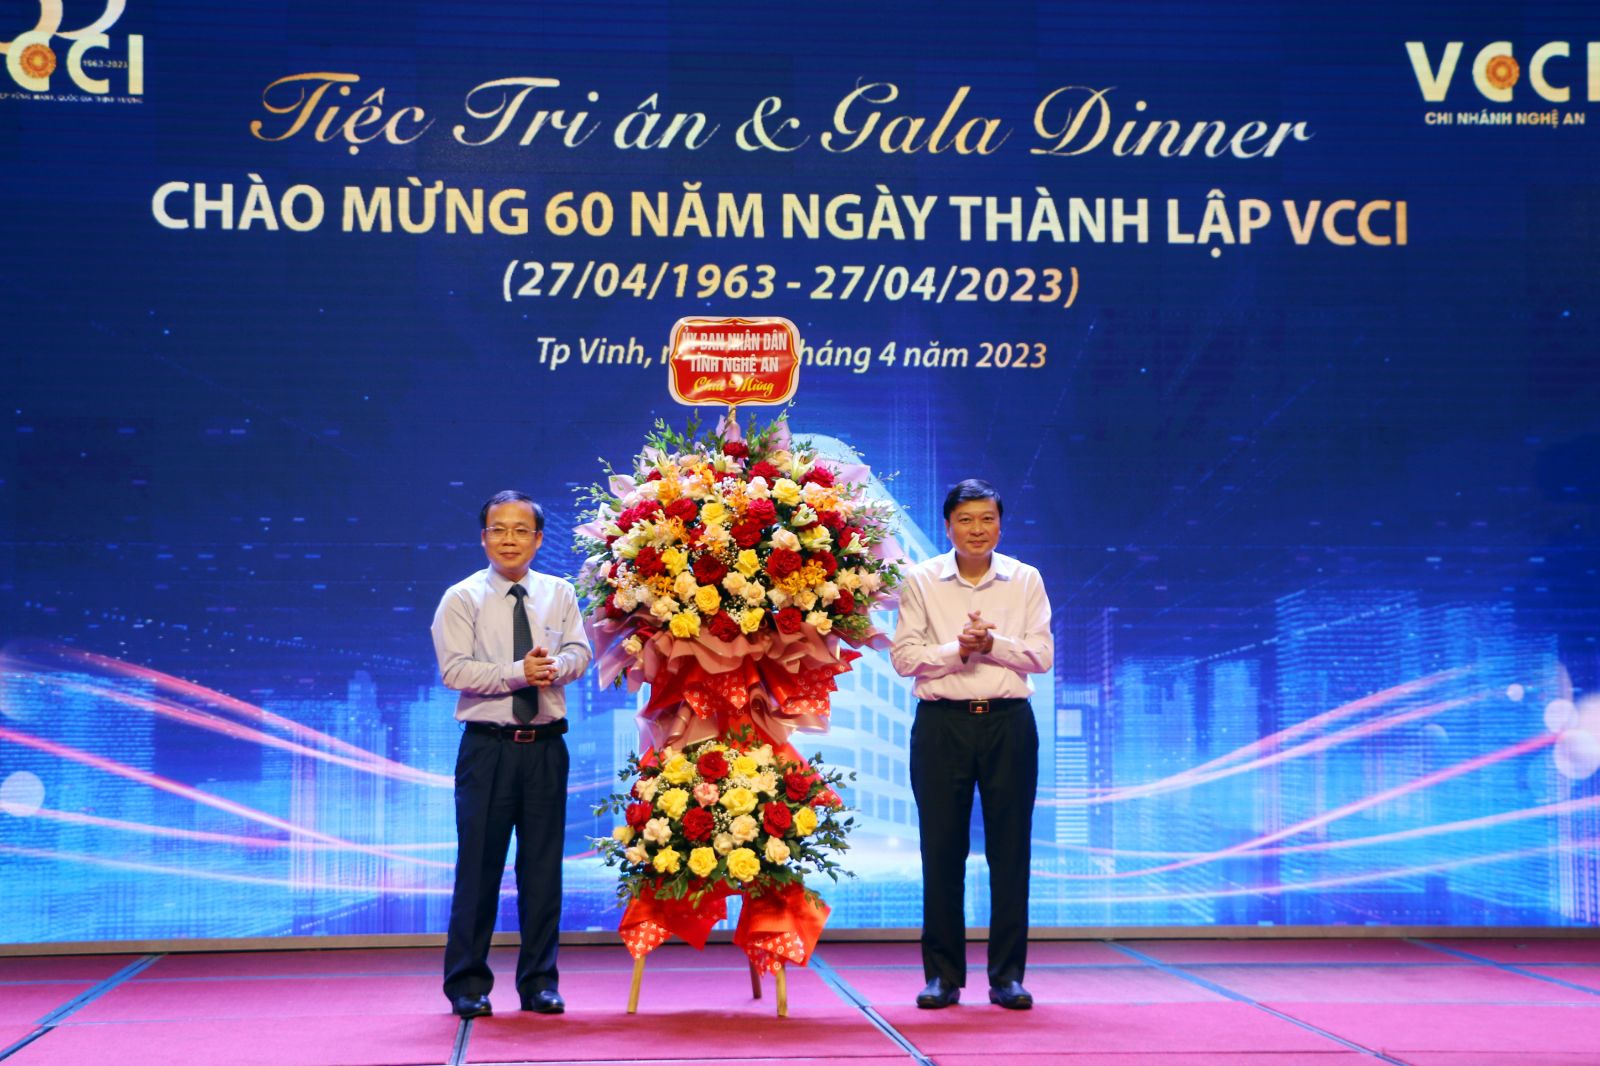 Thay mặt đại diện lãnh đạo UBND tỉnh Nghệ An, ông Lê Hồng Vinh tặng hoa chúc mừng cho đại diện VCCI là ông Bùi Trung Nghĩa - Phó Chủ tịch VCCI nhân dịp 60 năm ngày thành lập VCCI